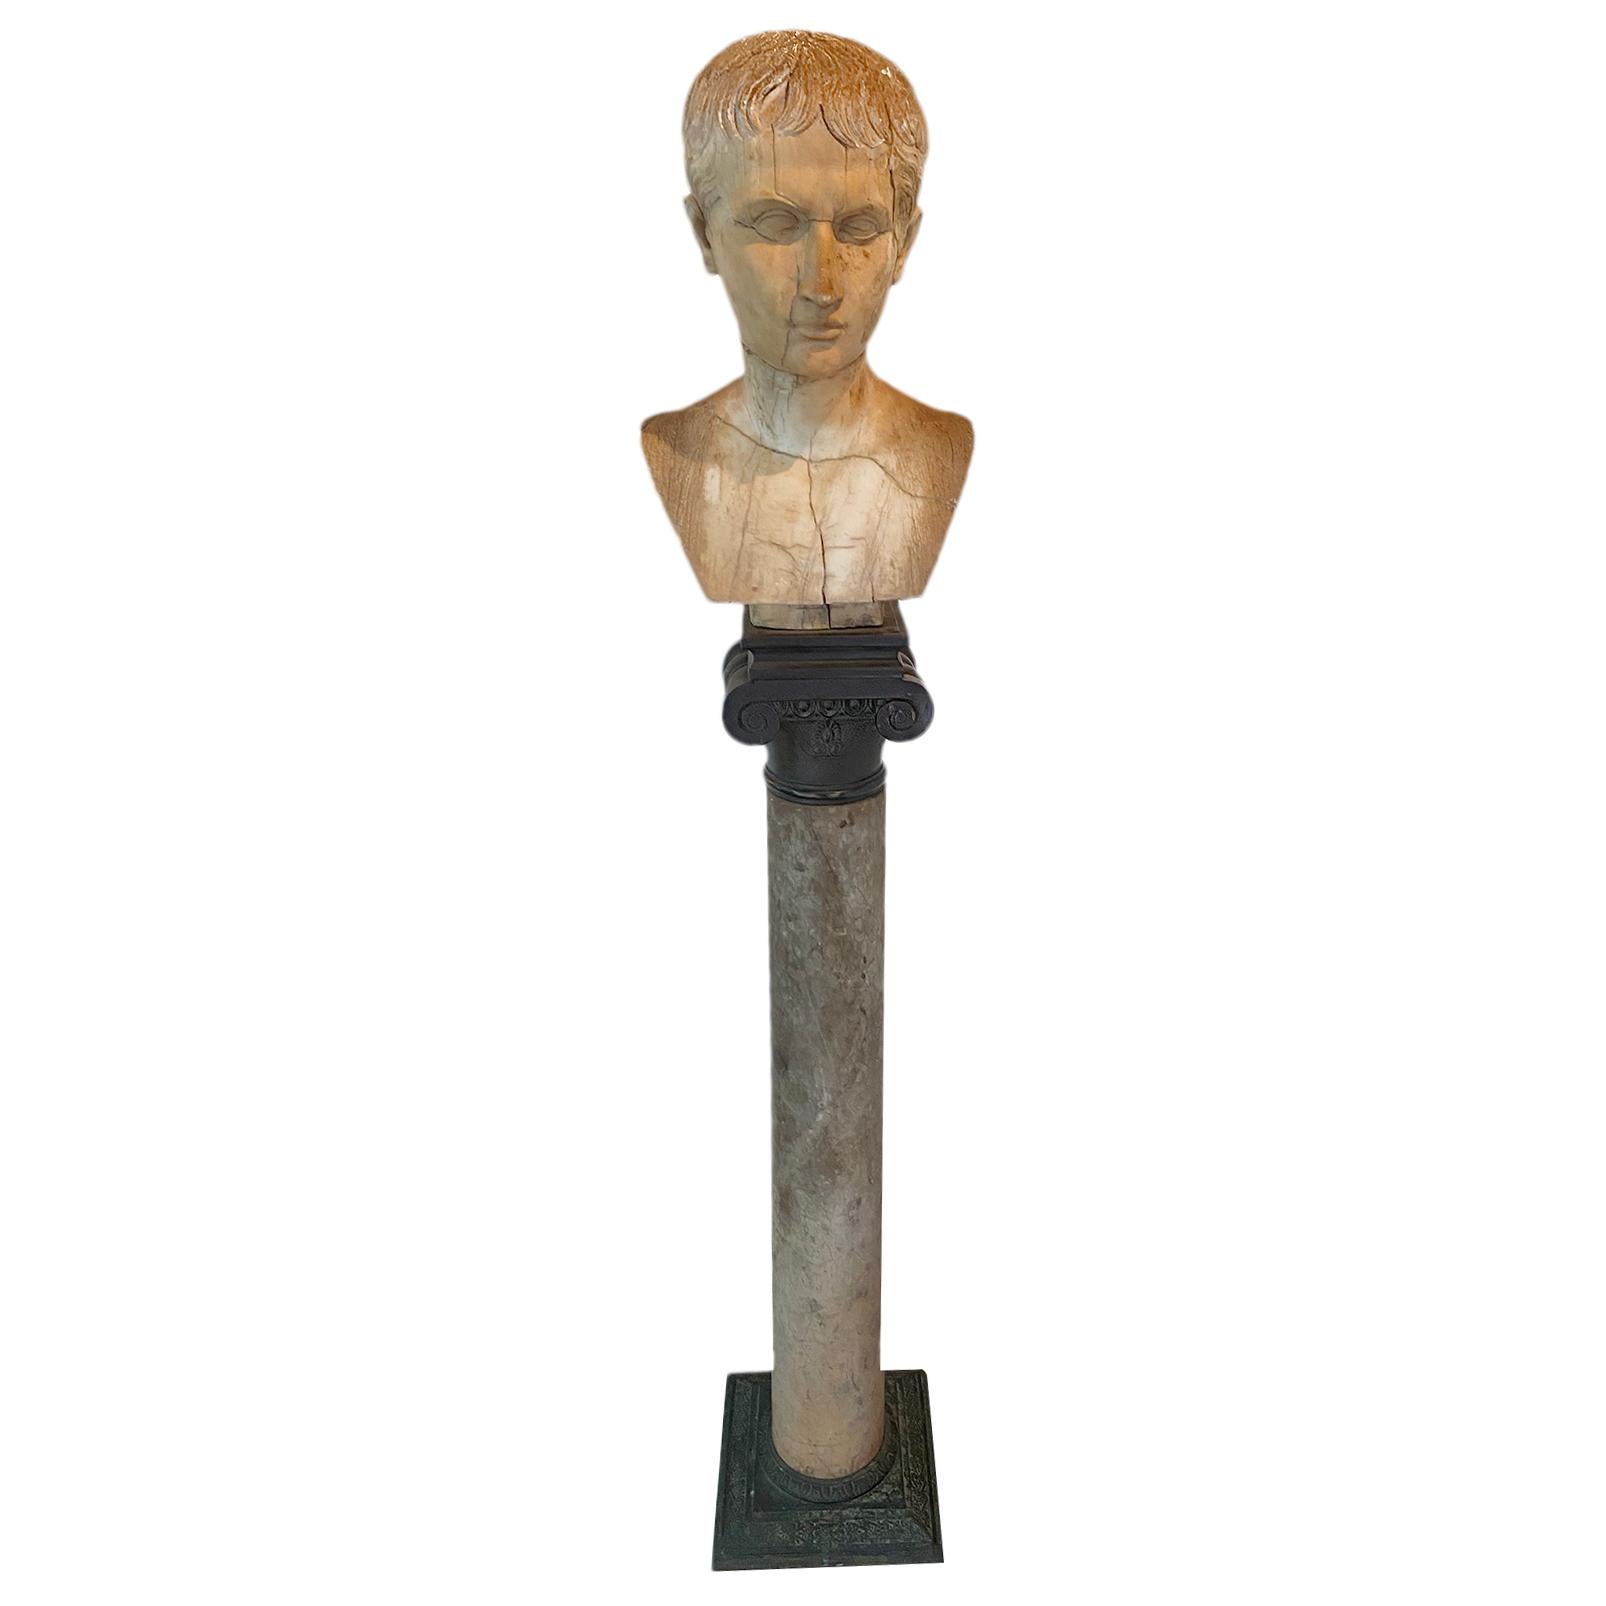 Buste en marbre italien sculpté du début du 19e siècle représentant un jeune César, assis sur une base en marbre antique et en bronze.

Mesures :
Hauteur totale 51.5